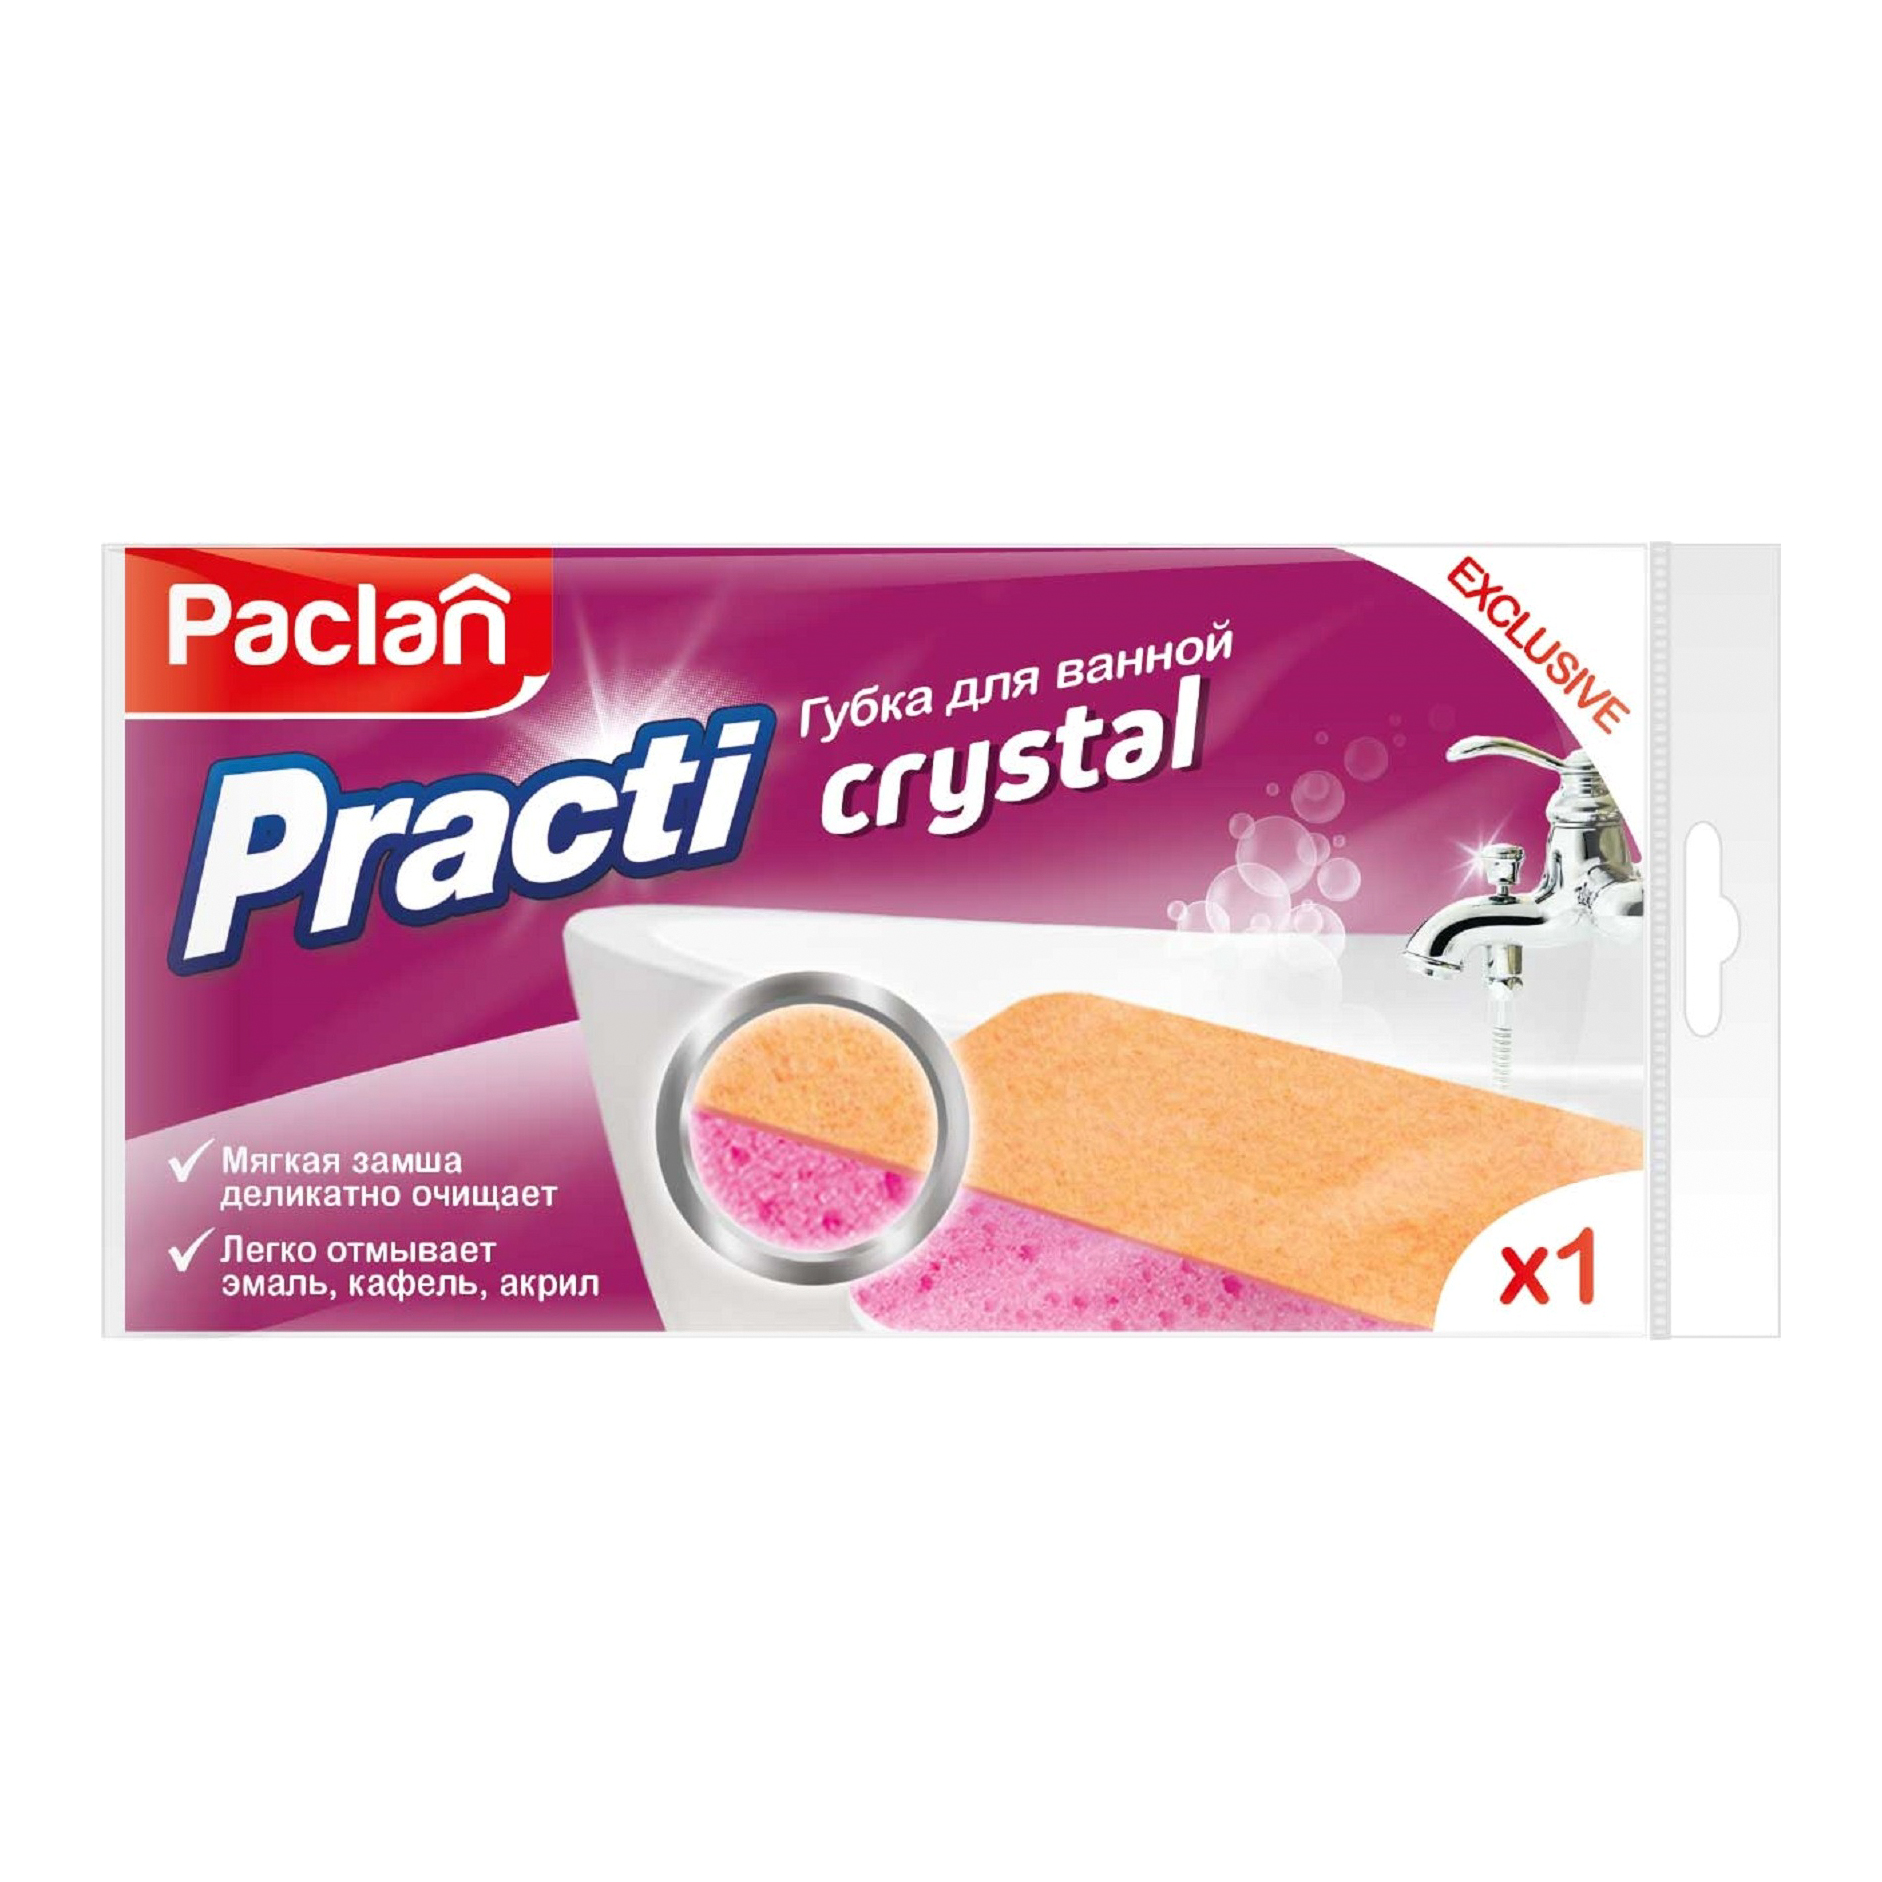 Губка для ванной Paclan Practi Crystal двухсторонняя салфетка губка для ванной you ll love